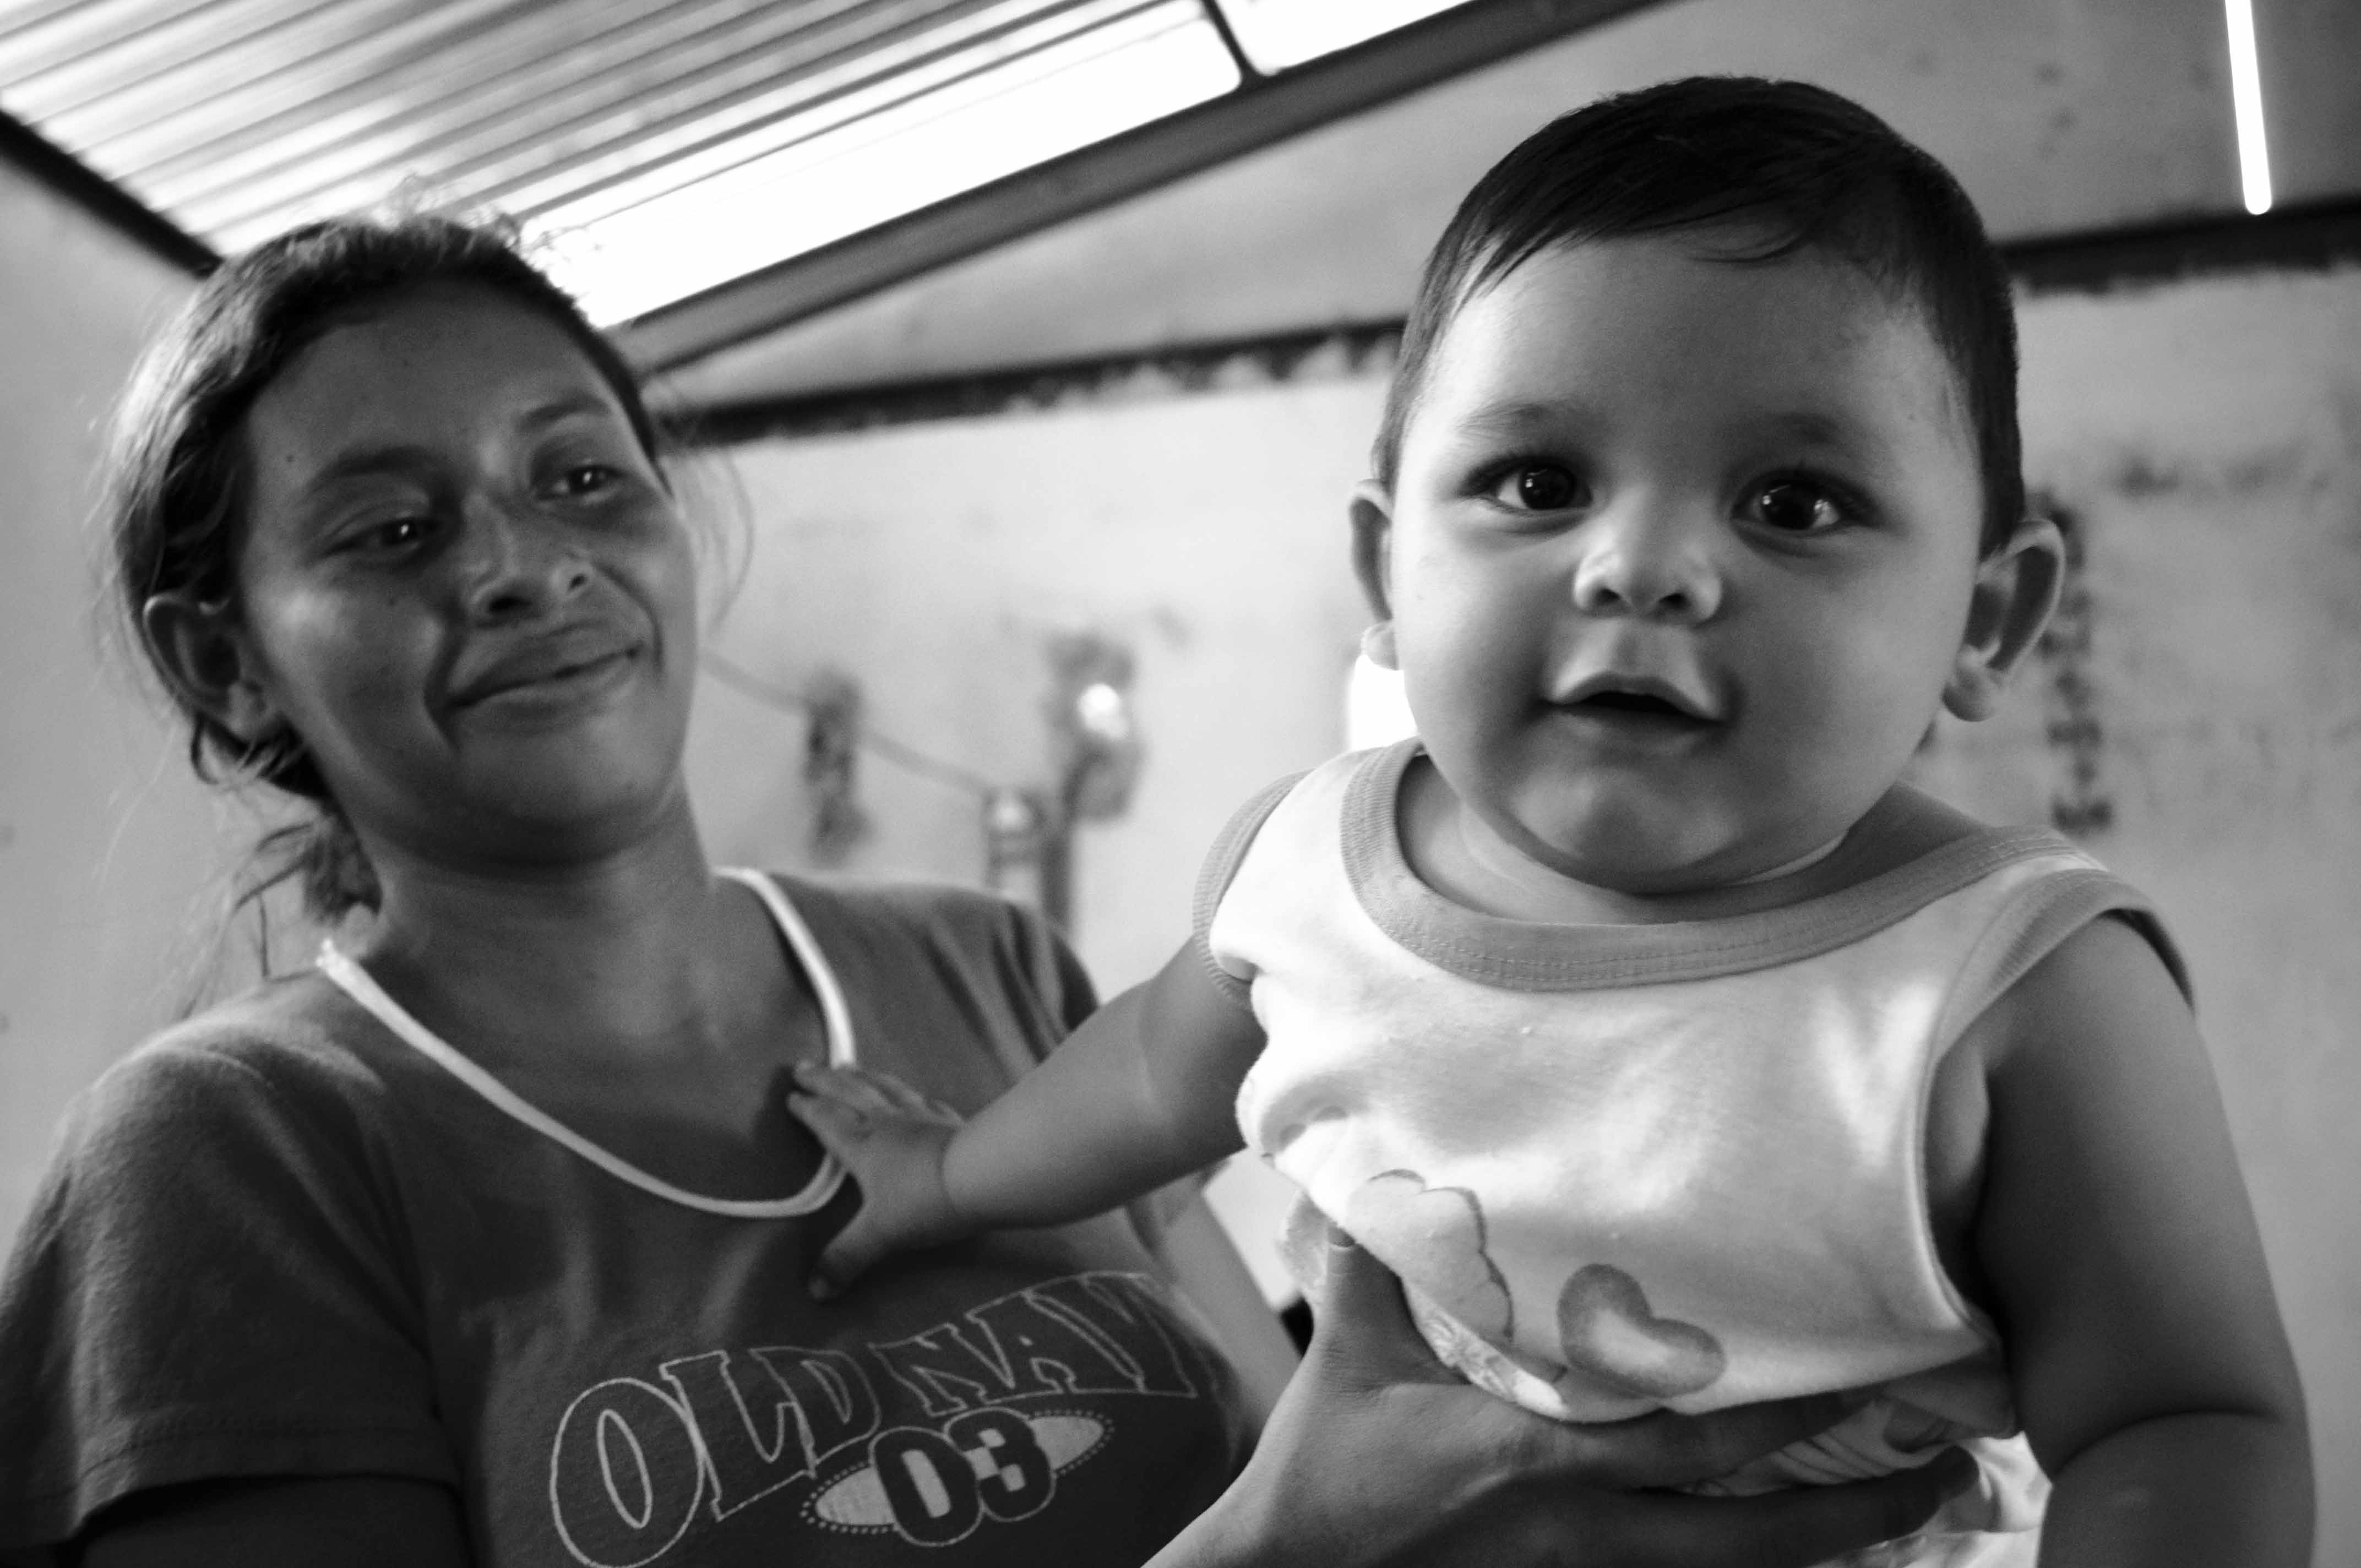 Casa materna Nicaragua